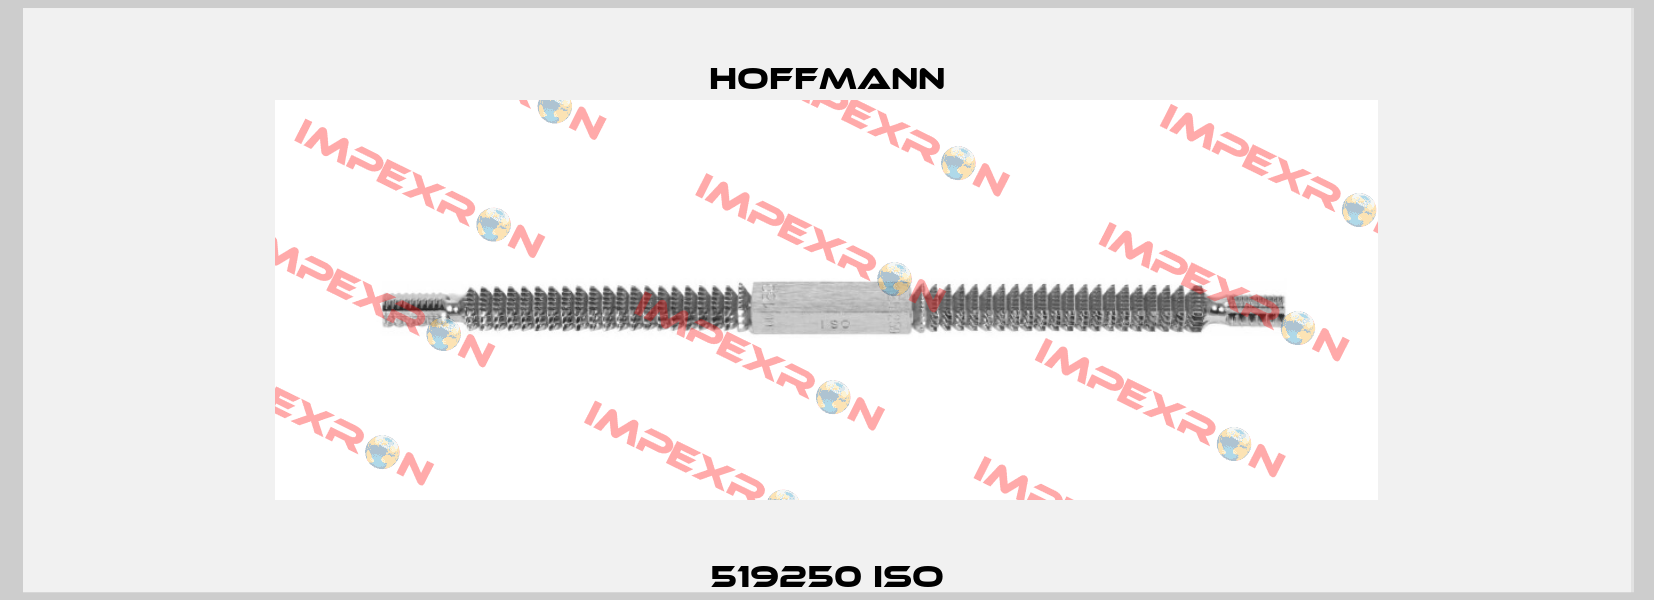 519250 ISO Hoffmann